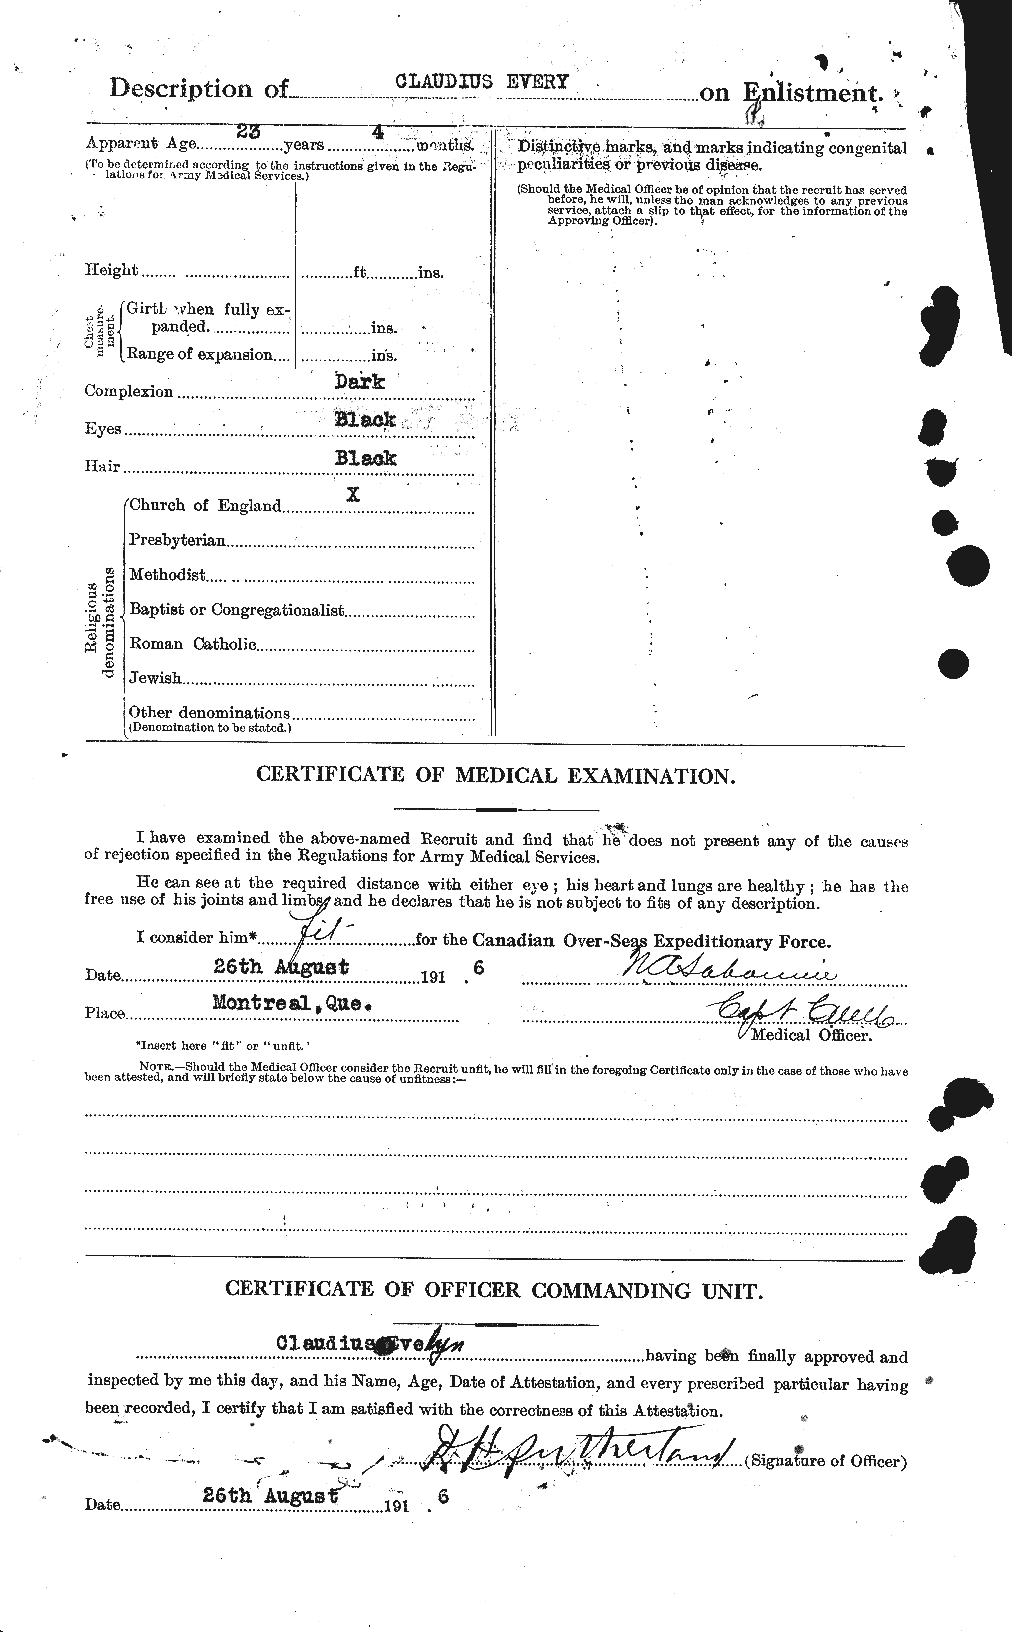 Dossiers du Personnel de la Première Guerre mondiale - CEC 315717b